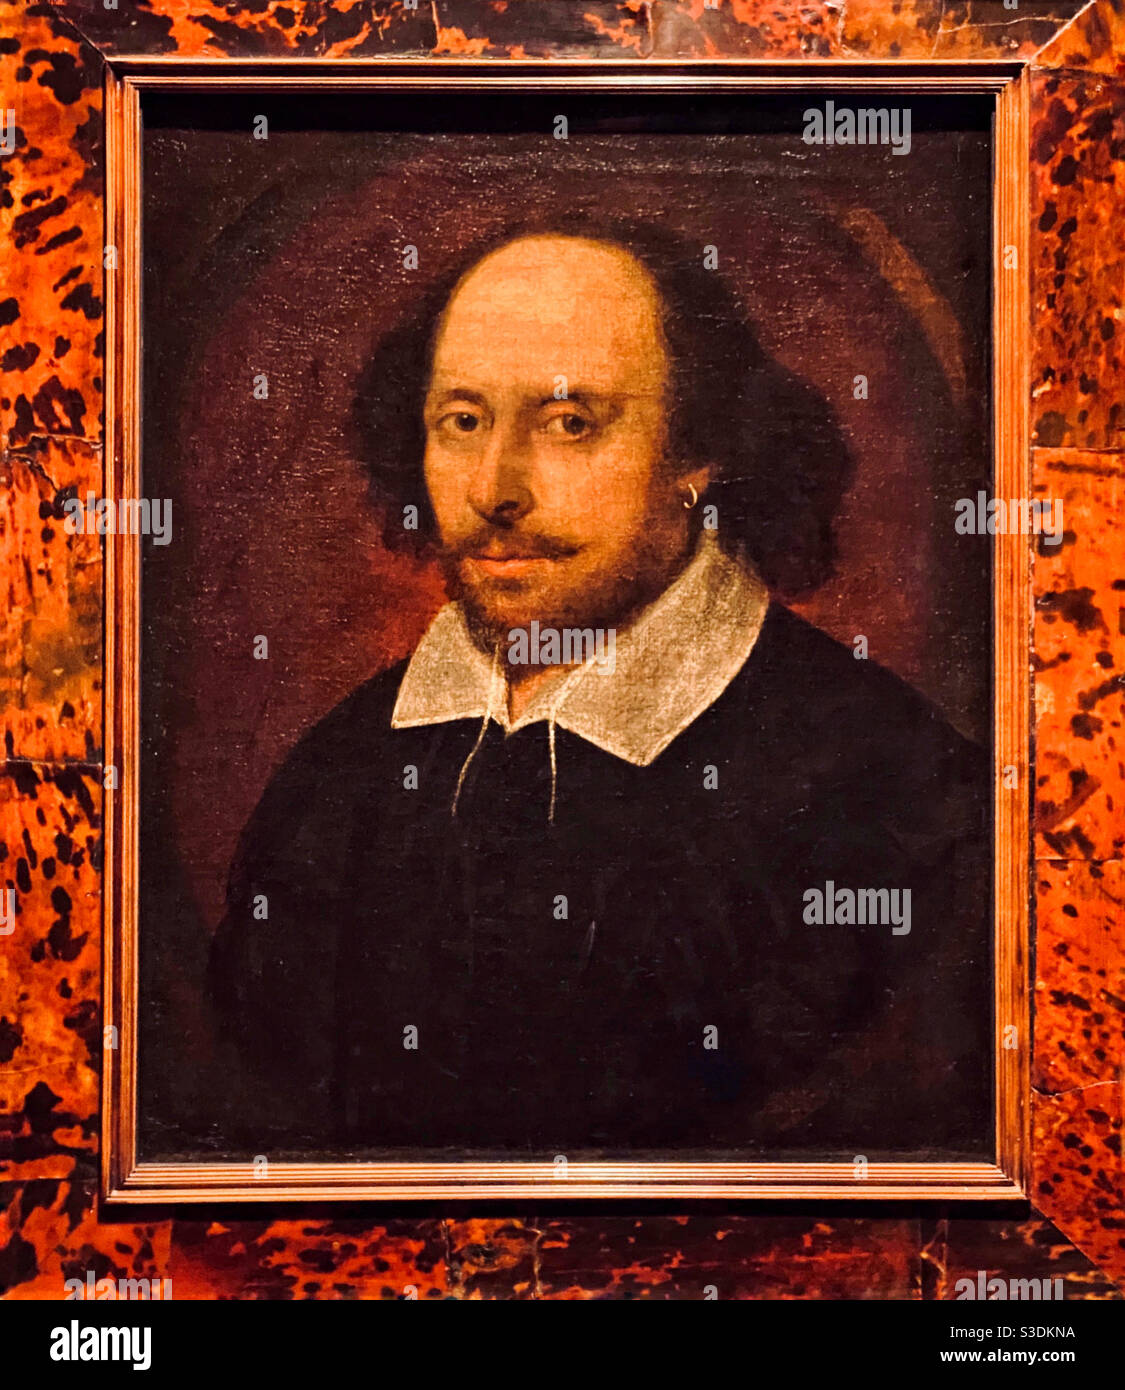 Un dipinto di immenso significato storico - un ritratto di William Shakespeare realmente dipinto dalla vita da John Taylor. Questo è il famoso "Chandos Ritratto" intorno al 1610. Un tesoro inestimabile. Foto Stock